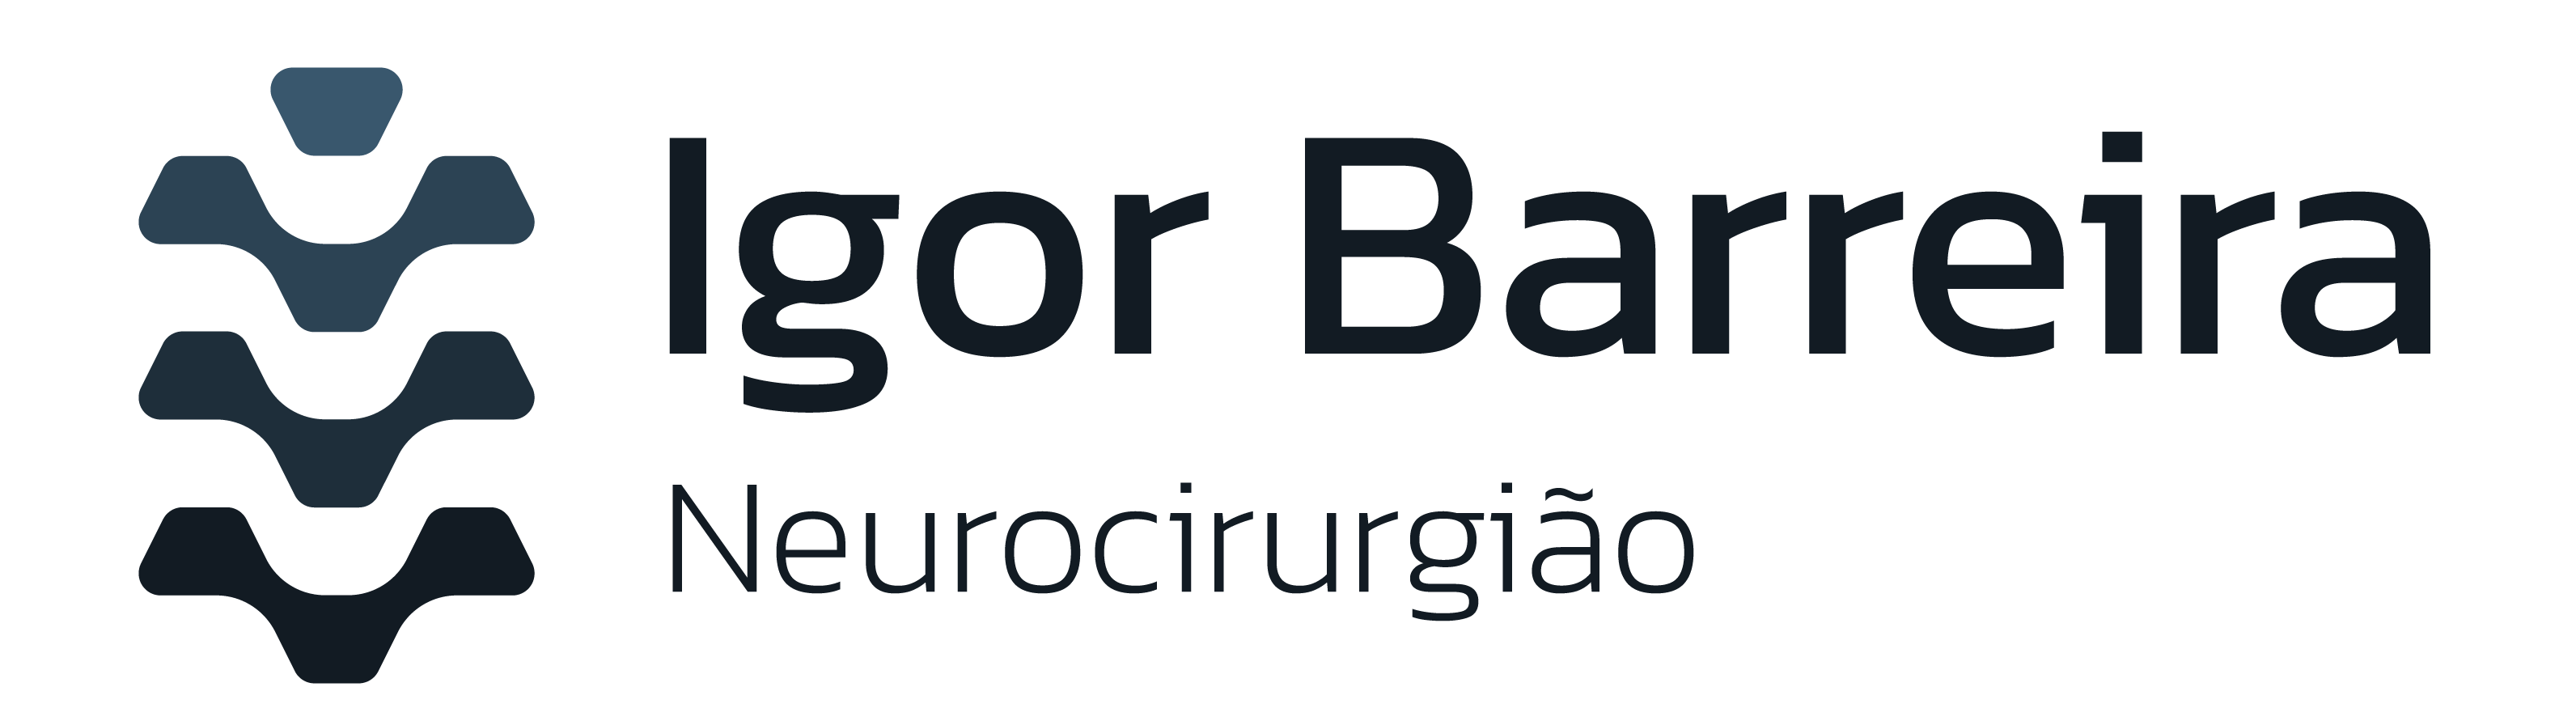 Dr. Igor Barreira